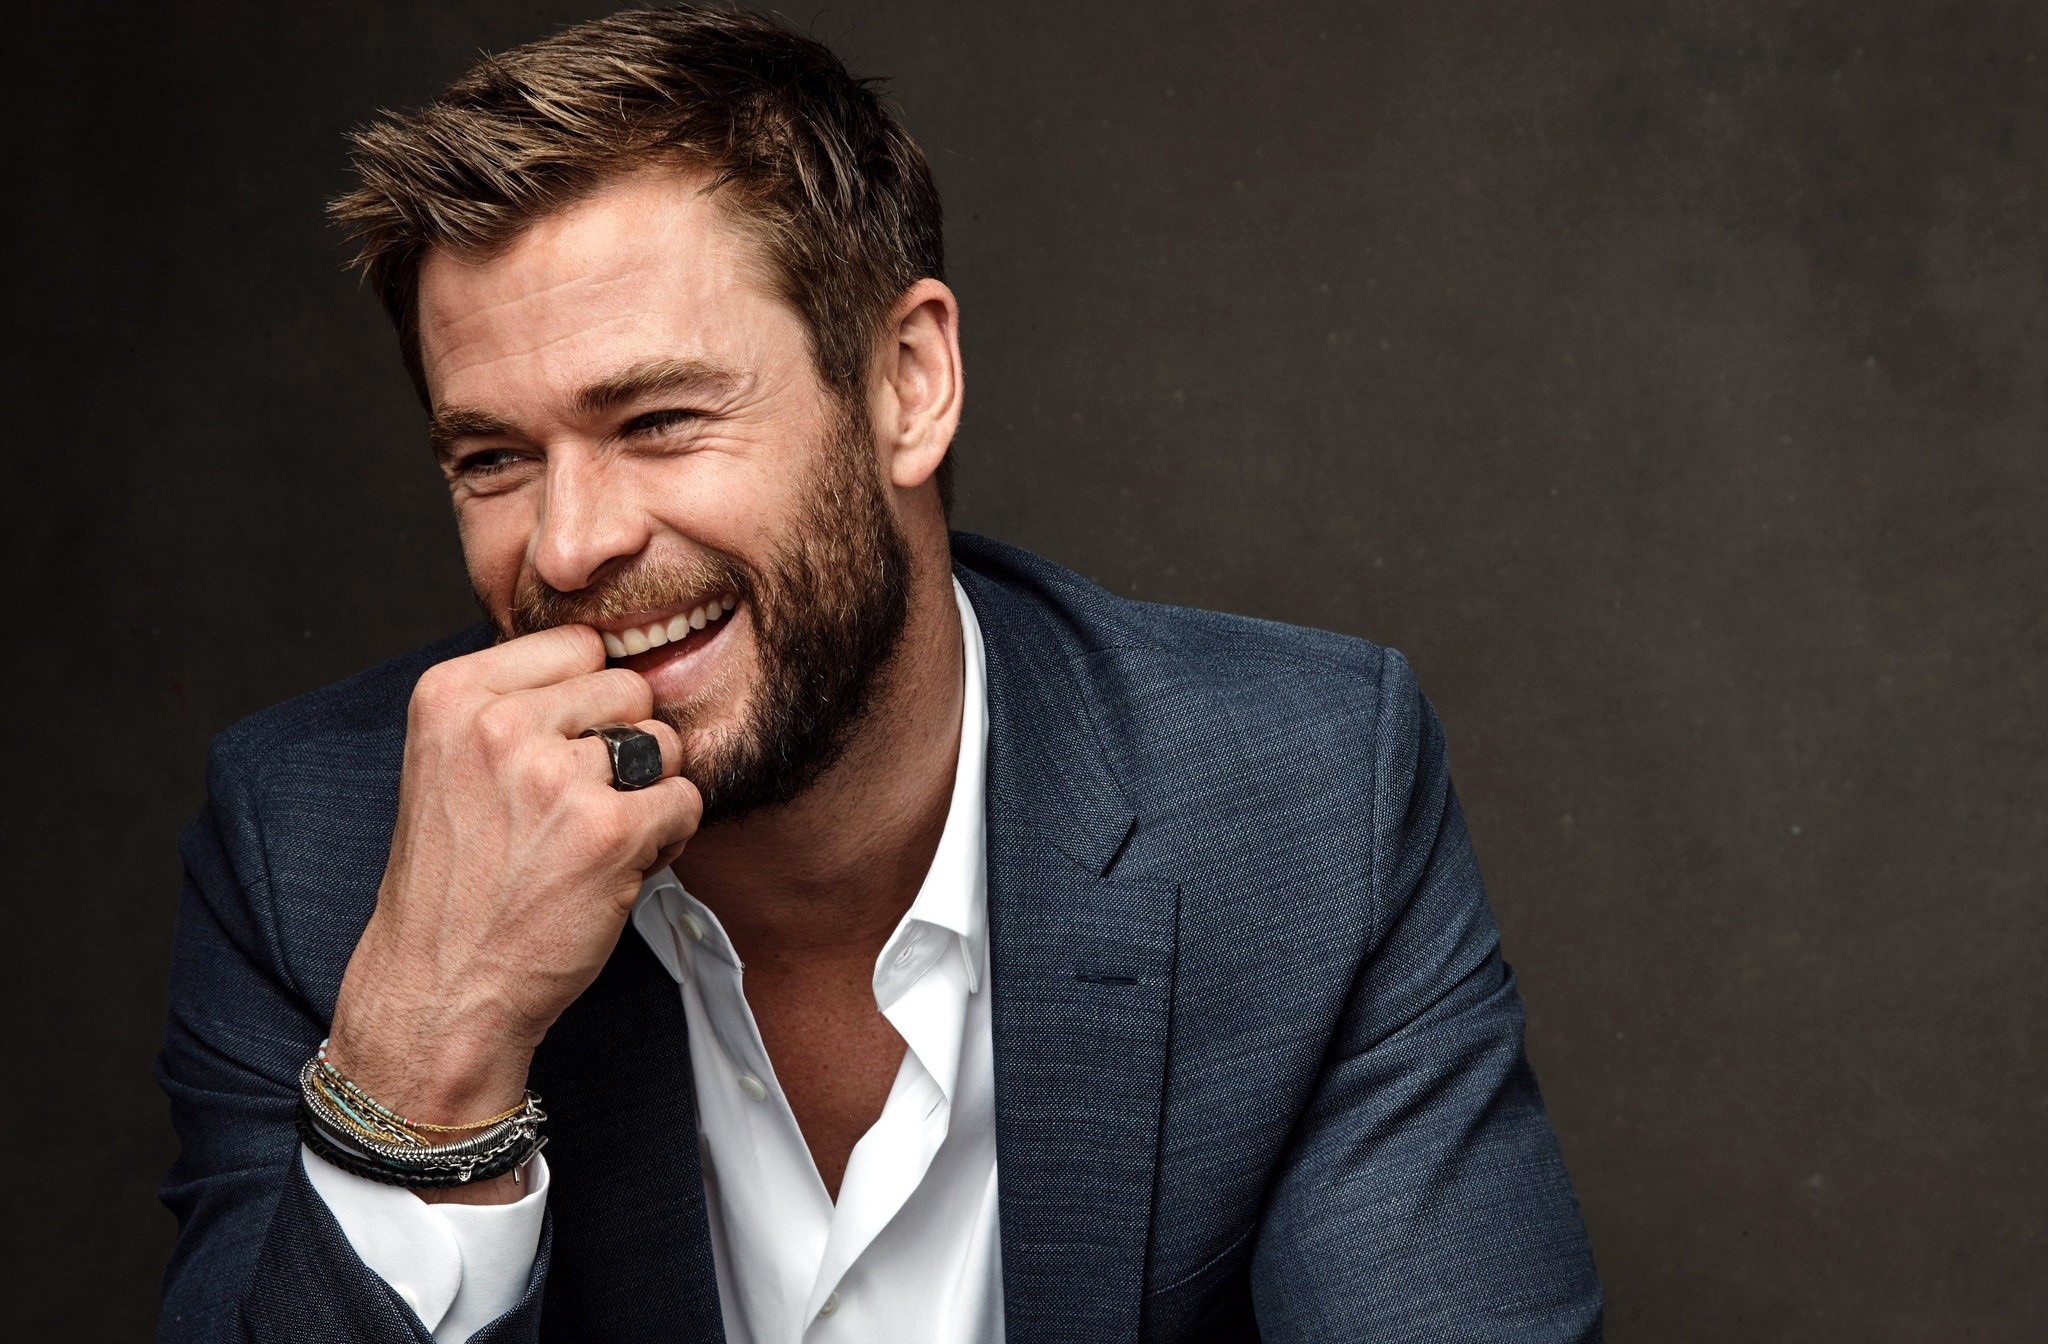 Wallpaper Of Actor Australian Beard Chris Hemsworth Smile